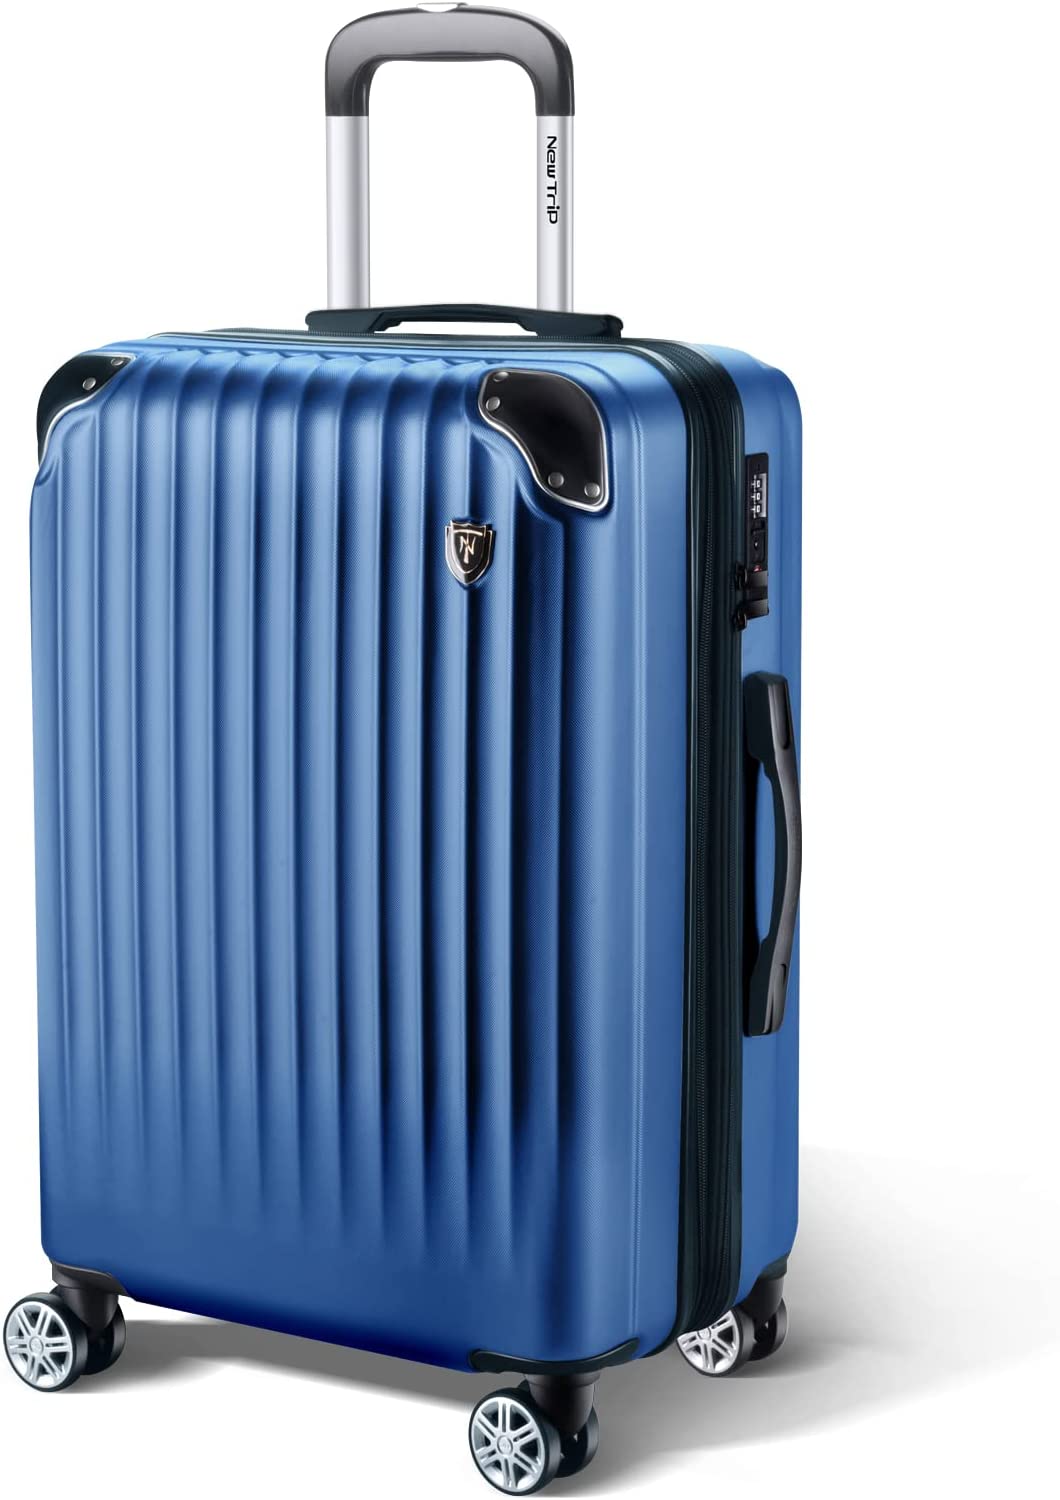 大容量 スーツケース 本体 激安 高品質 ワインレッド Lサイズ 、XL